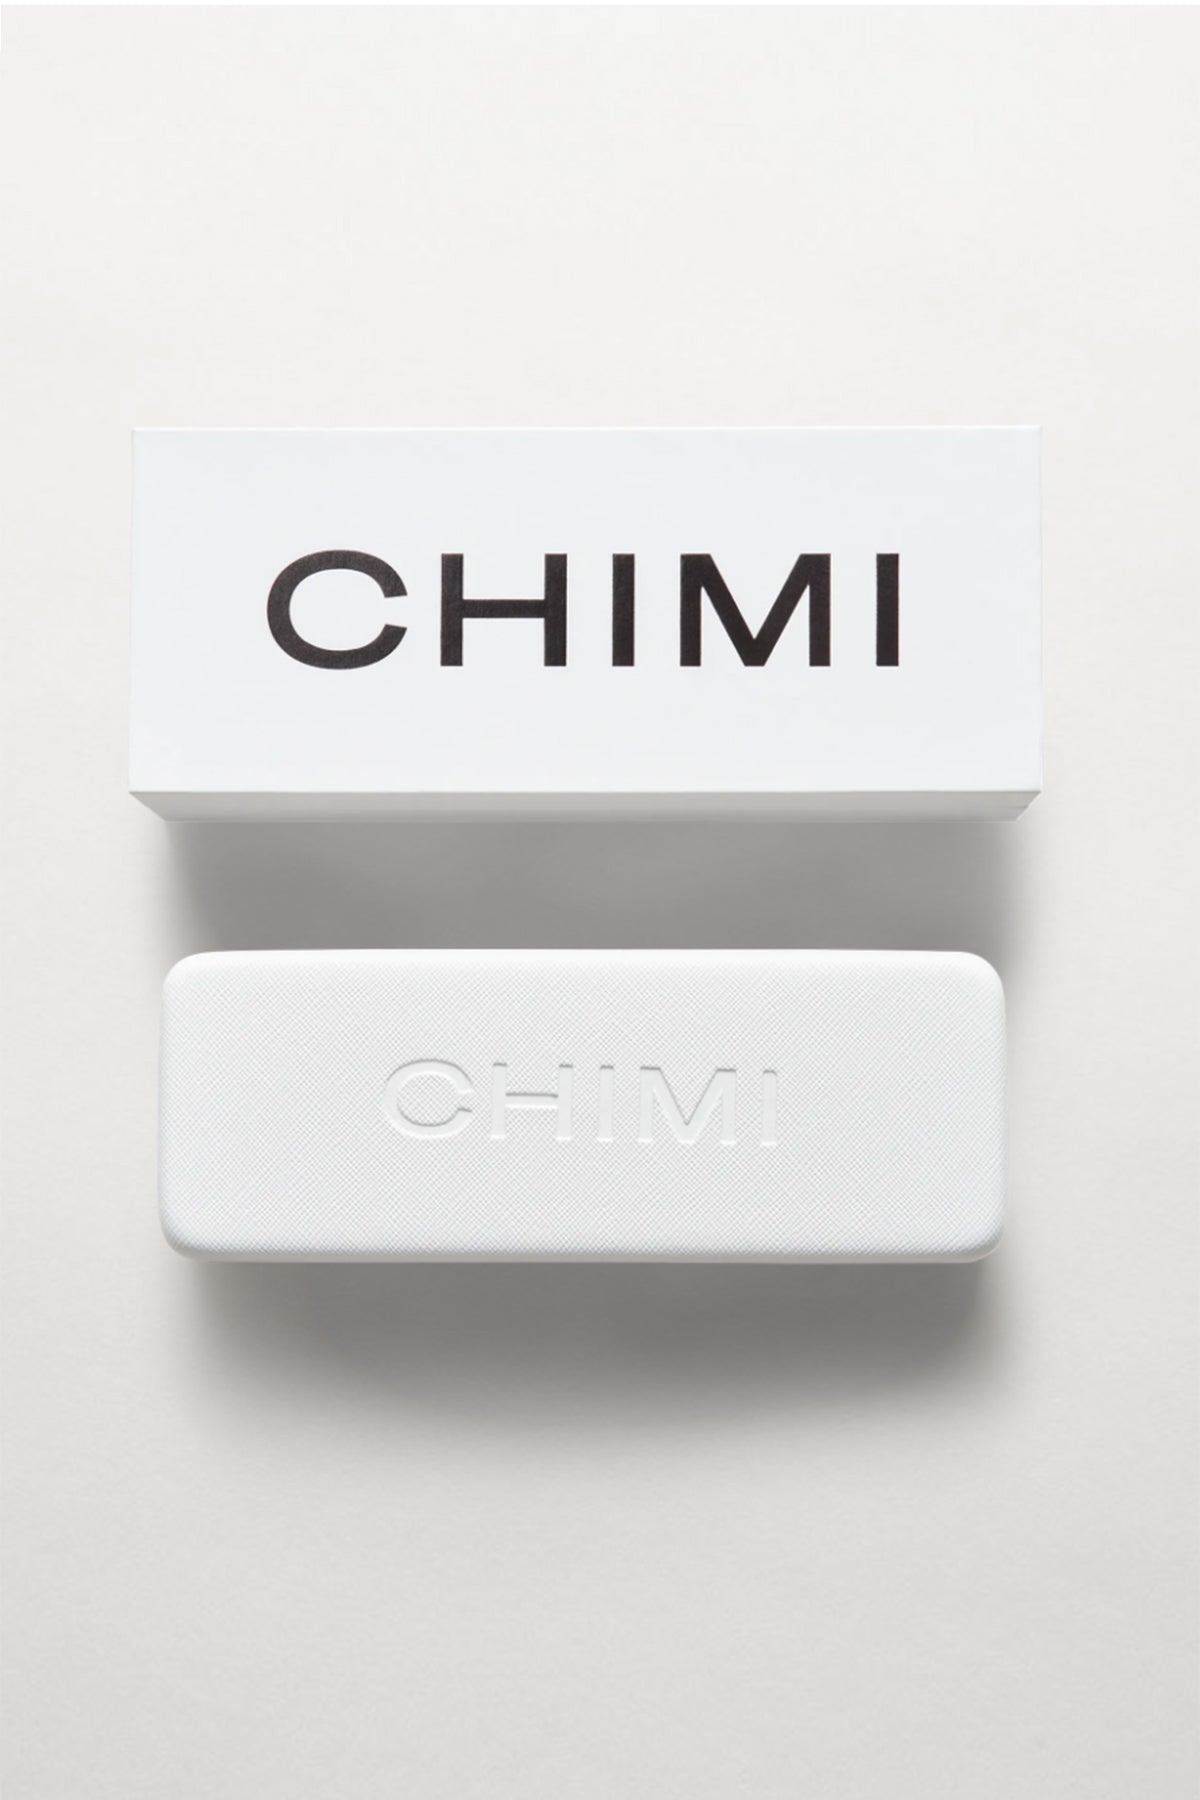 Chimi Sunglasses Case and Box-22132879917249